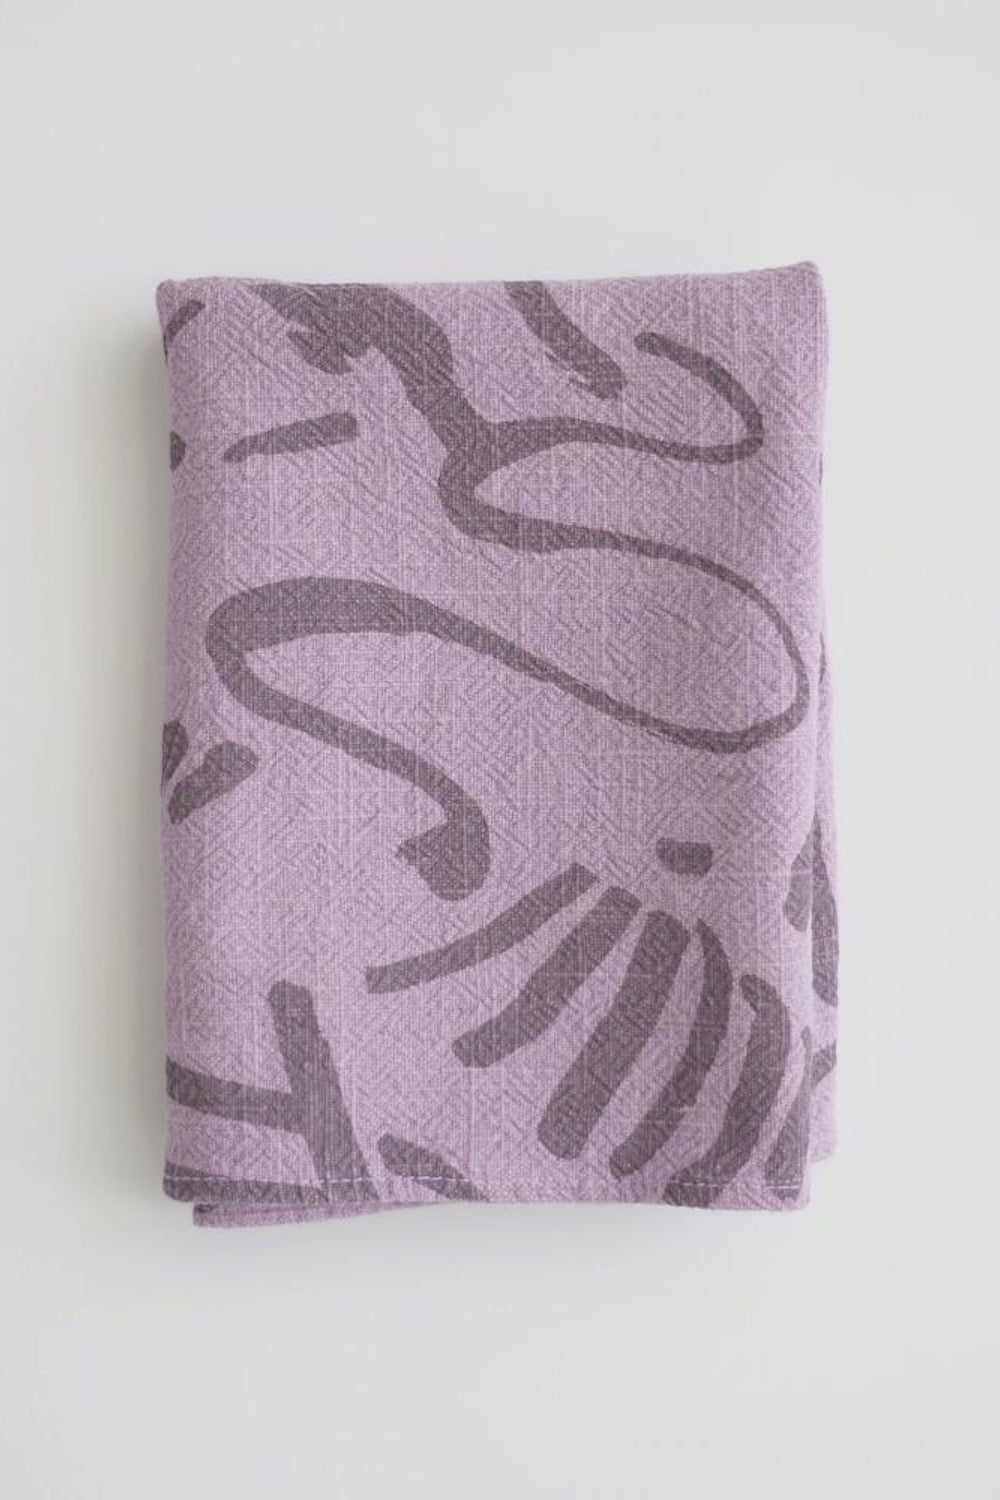 Plum Fig Fold Tea Towel